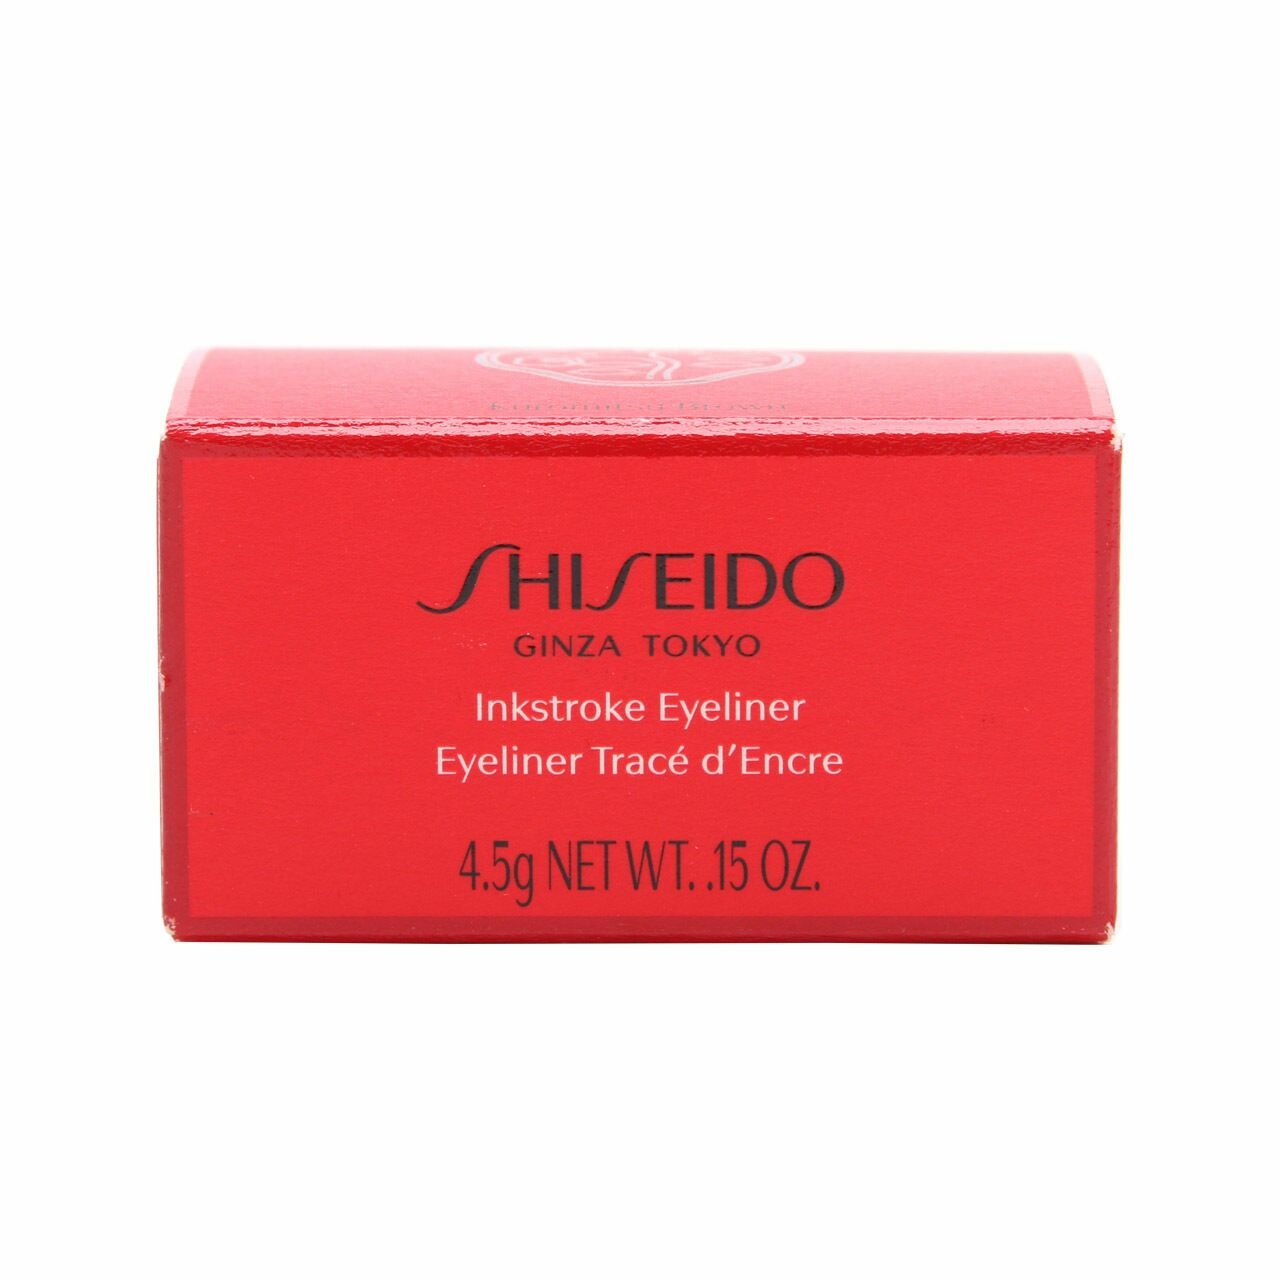 Shiseido Ginza Tokyo Inkstroke Eyeliner